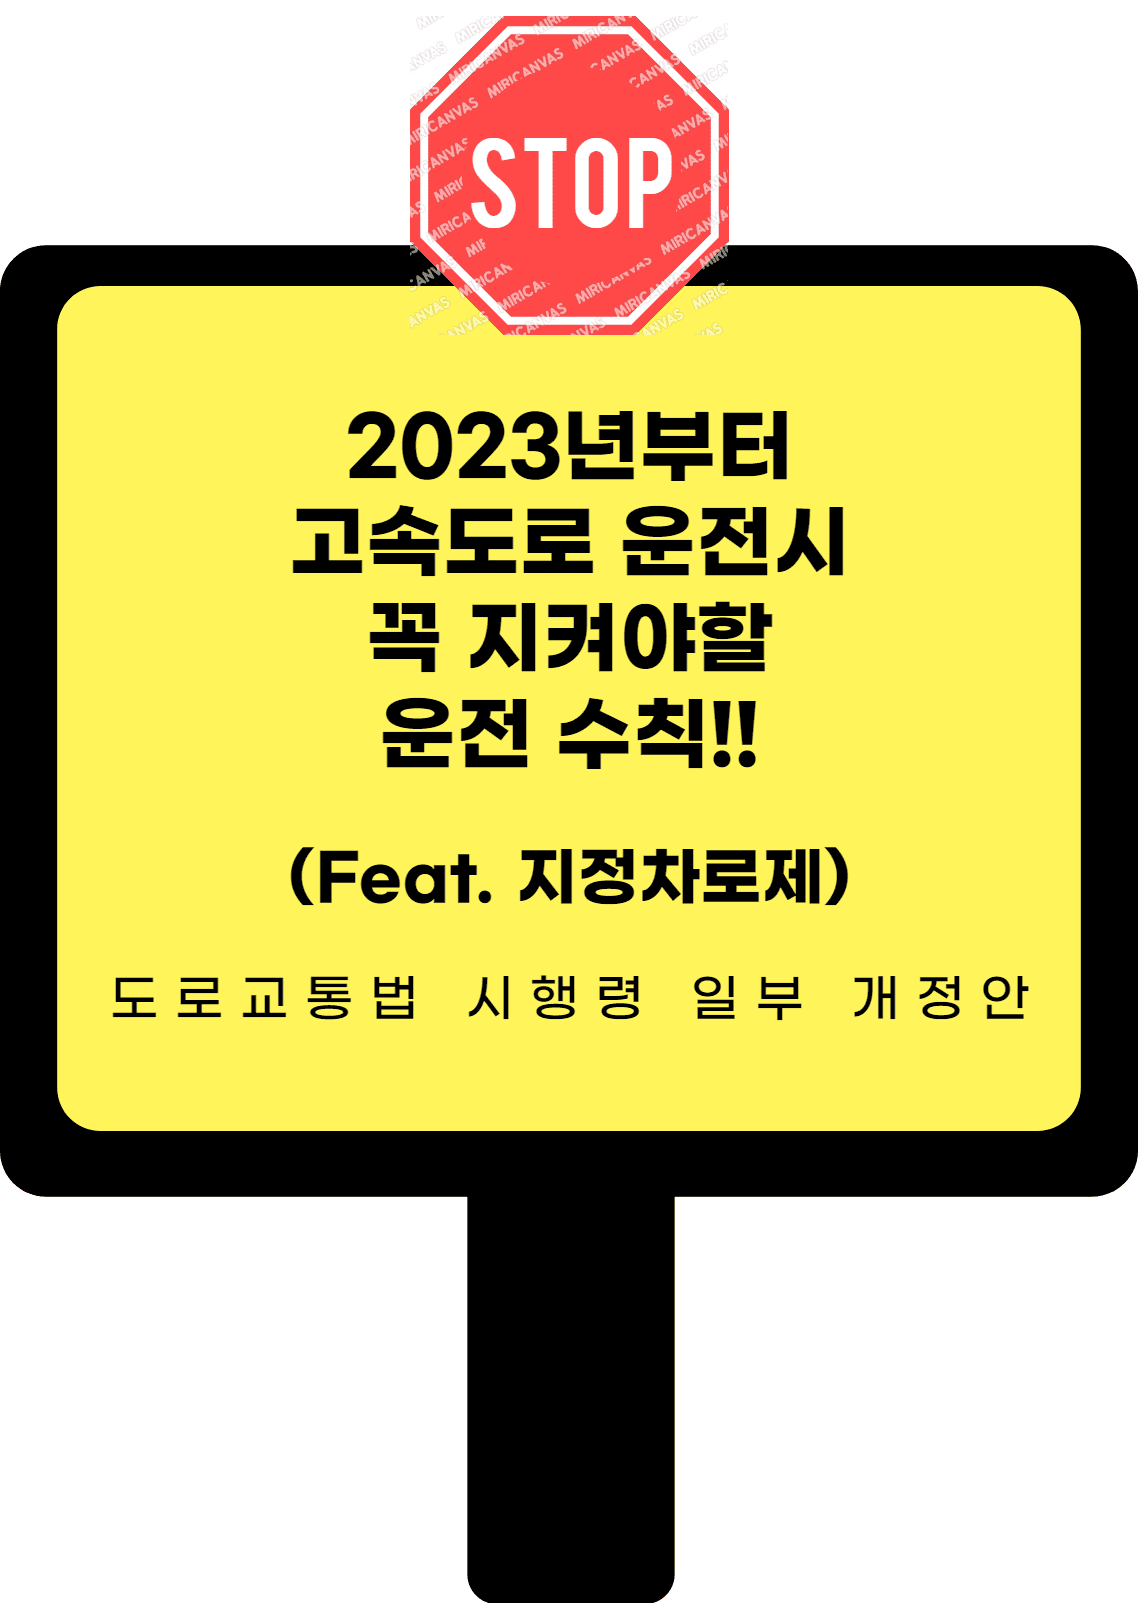 2023년부터 고속도로 운전시 지켜야할 운전수칙 포스터 입니다.